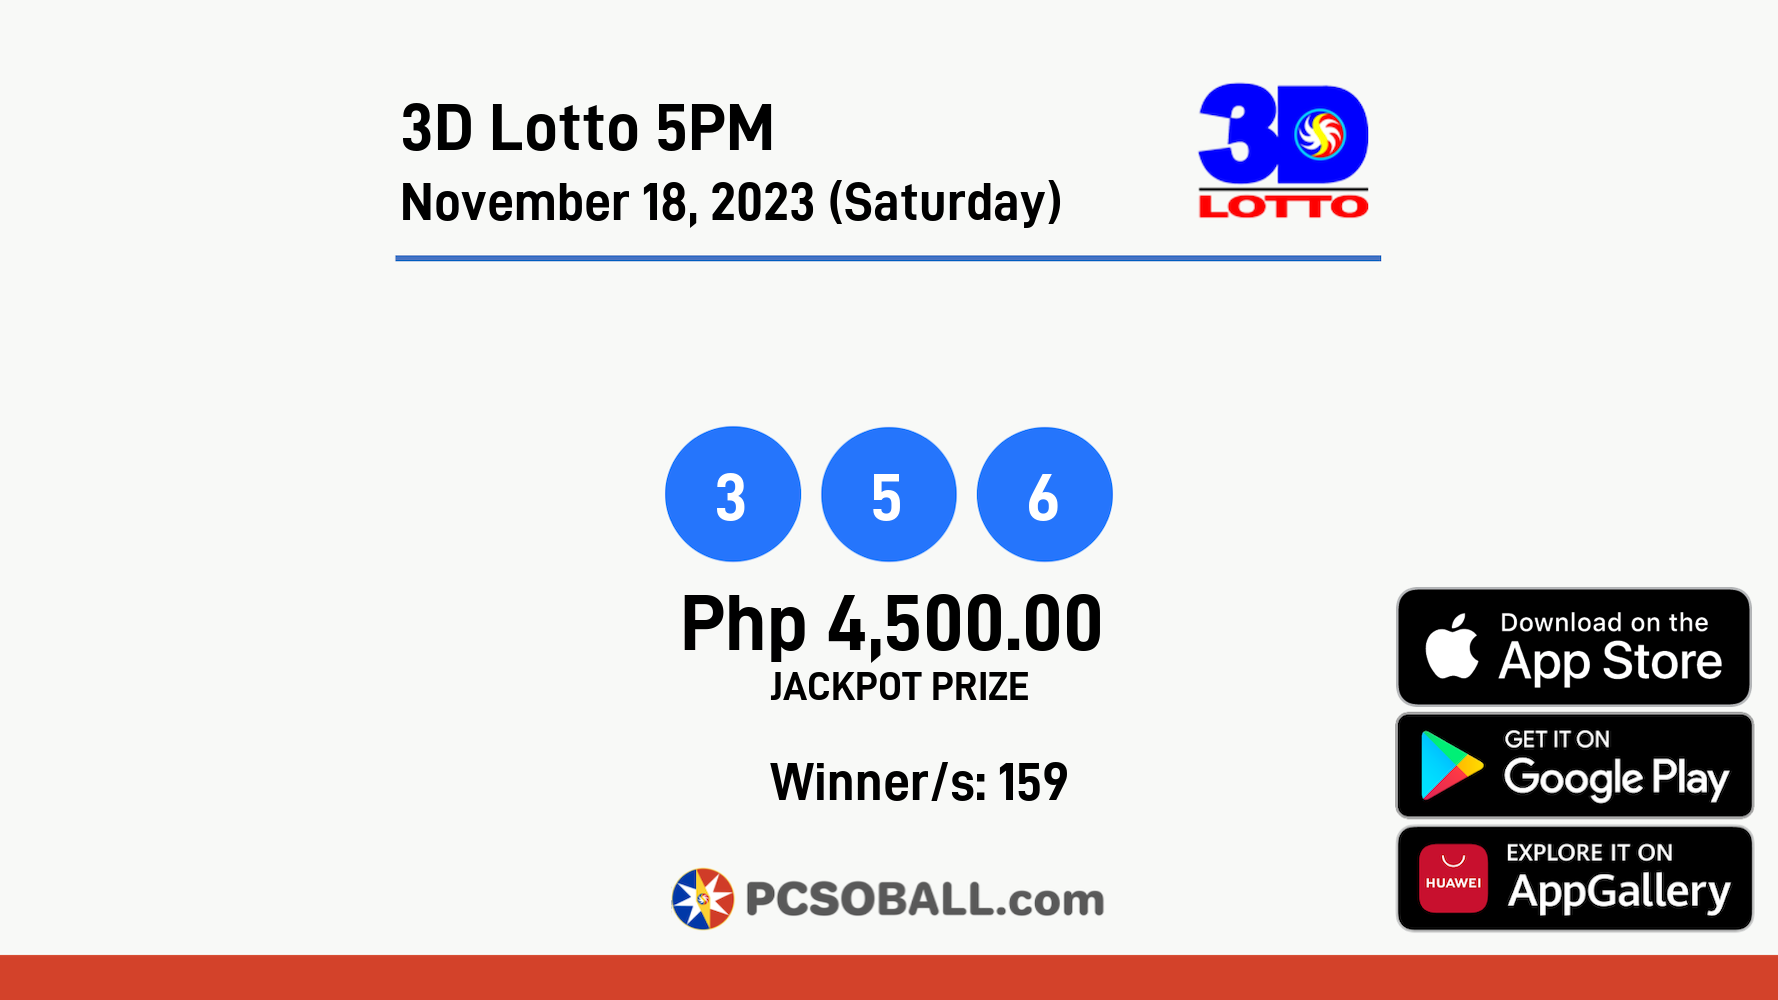 3D Lotto 5PM November 18, 2023 (Saturday) Result